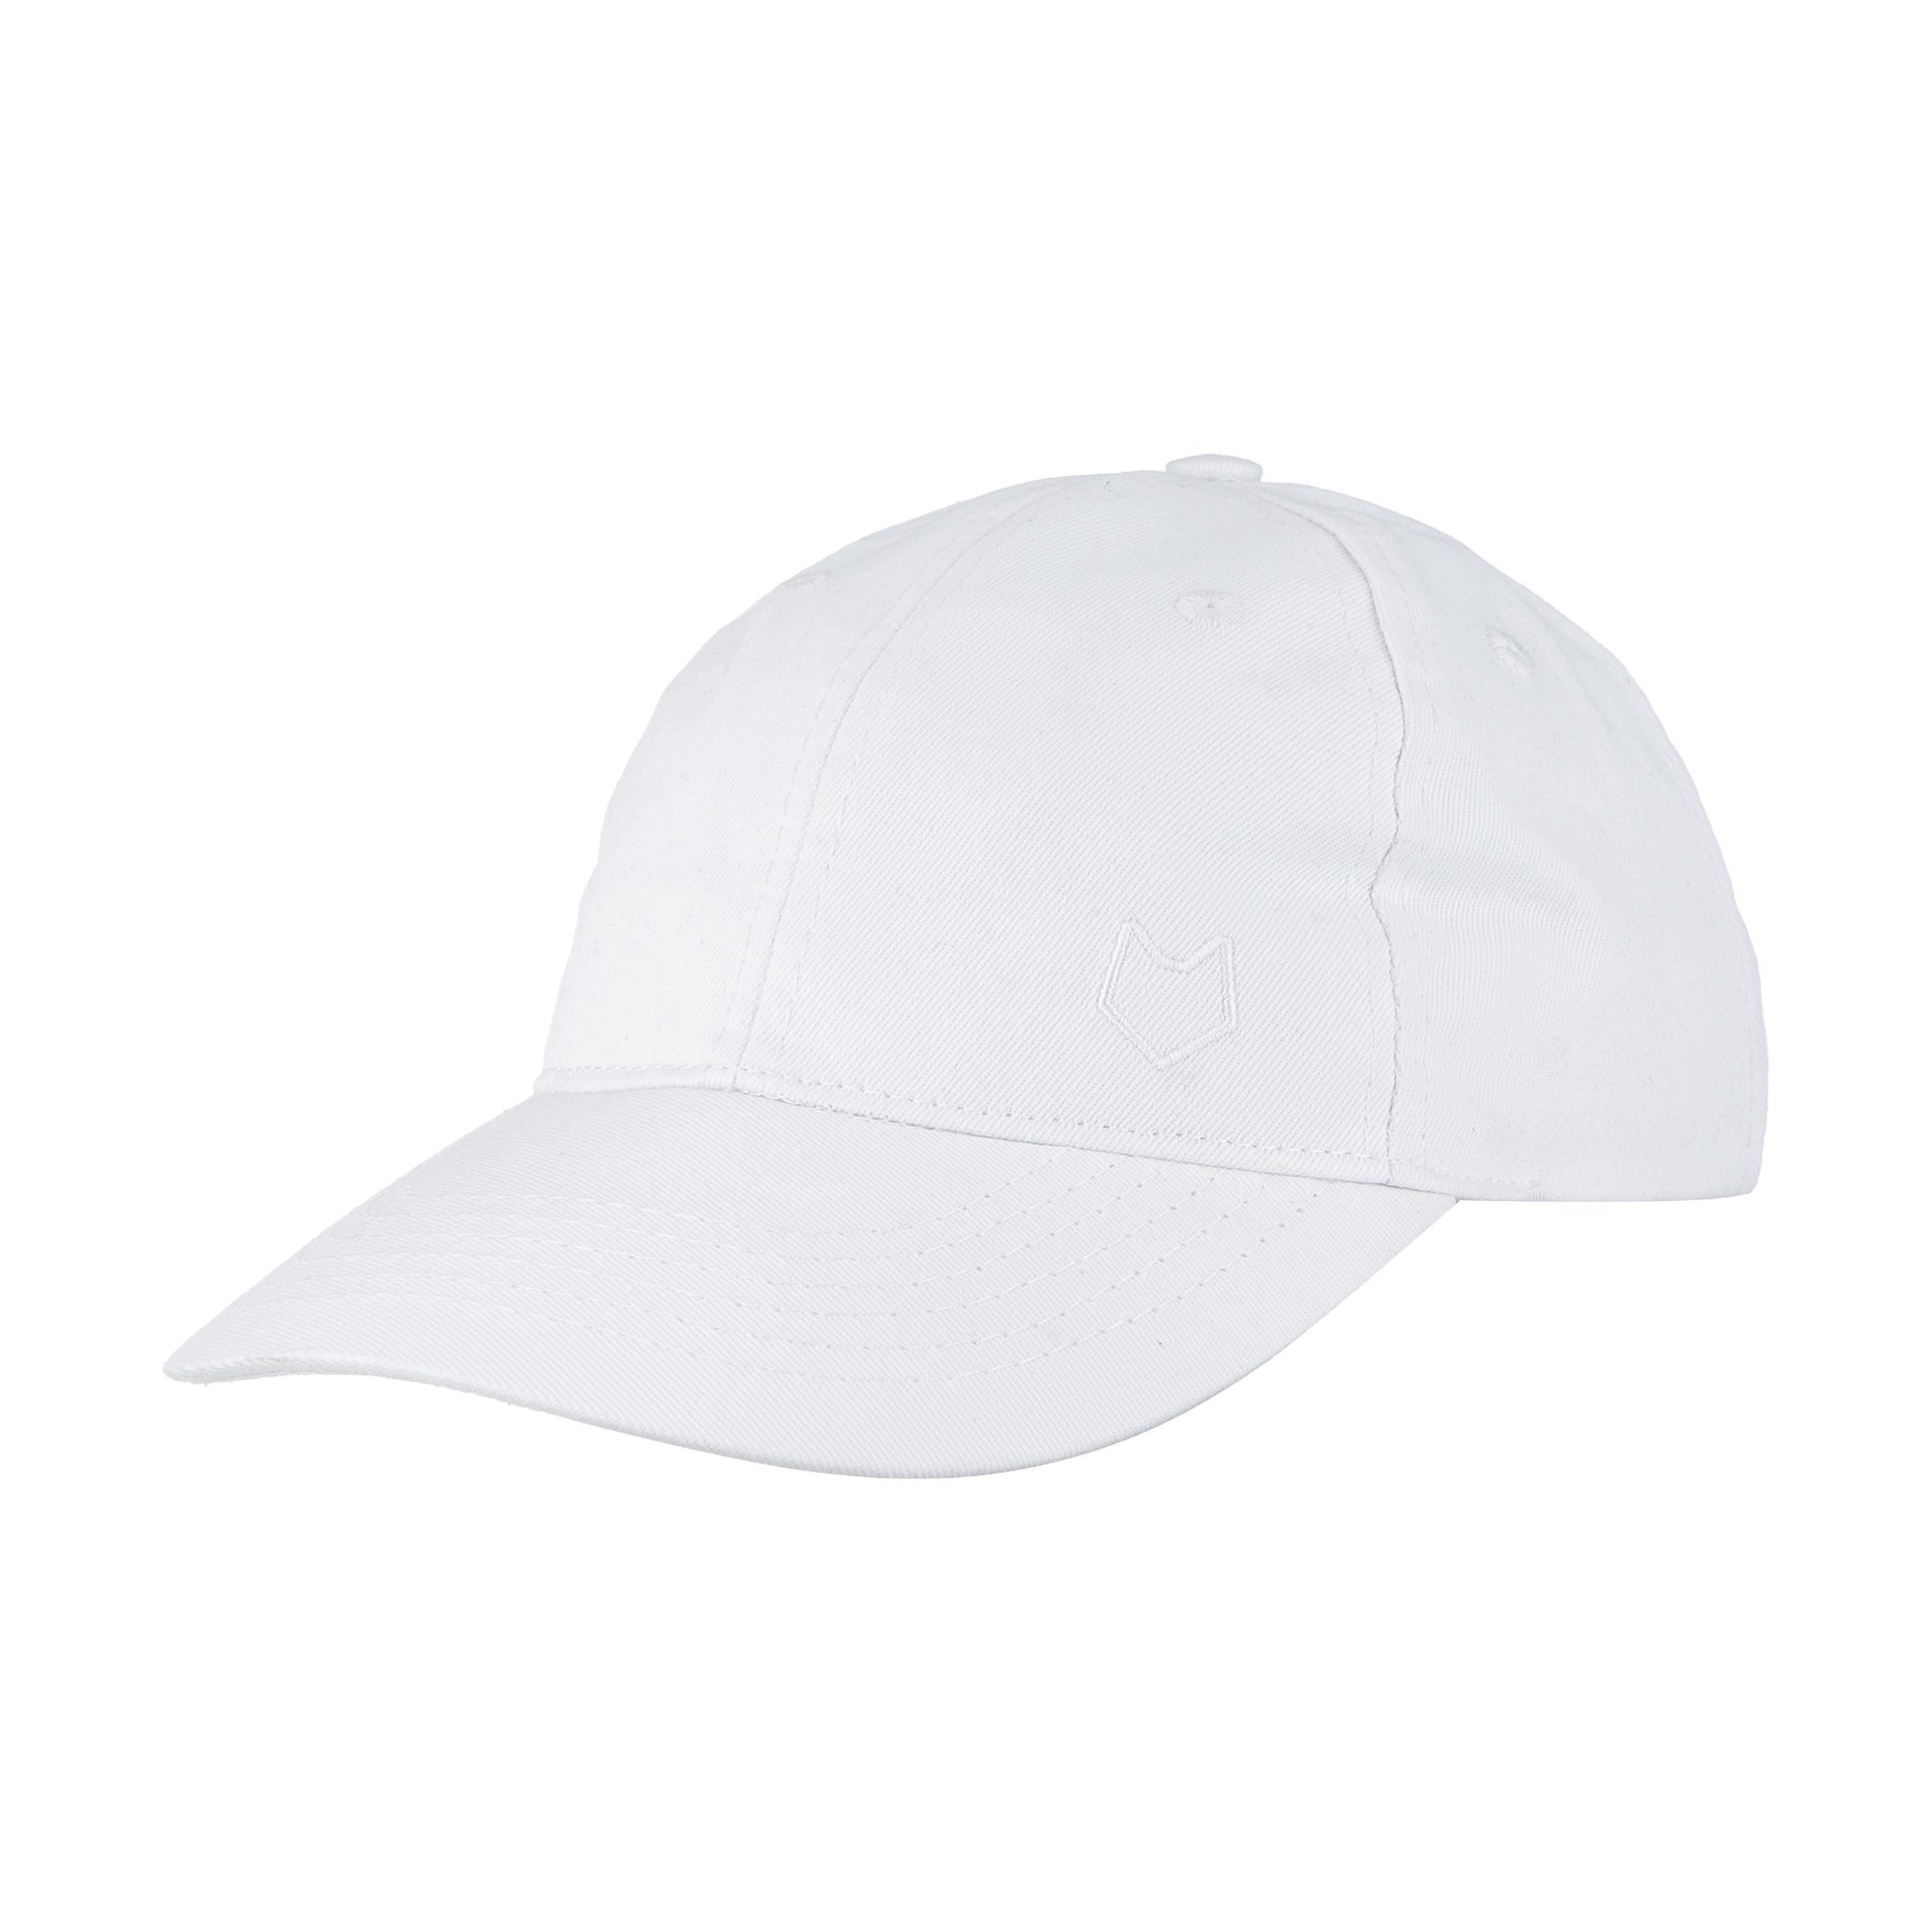 نکته خرید - قیمت روز کلاه کپ مل اند موژ مدل U07704-002 خرید